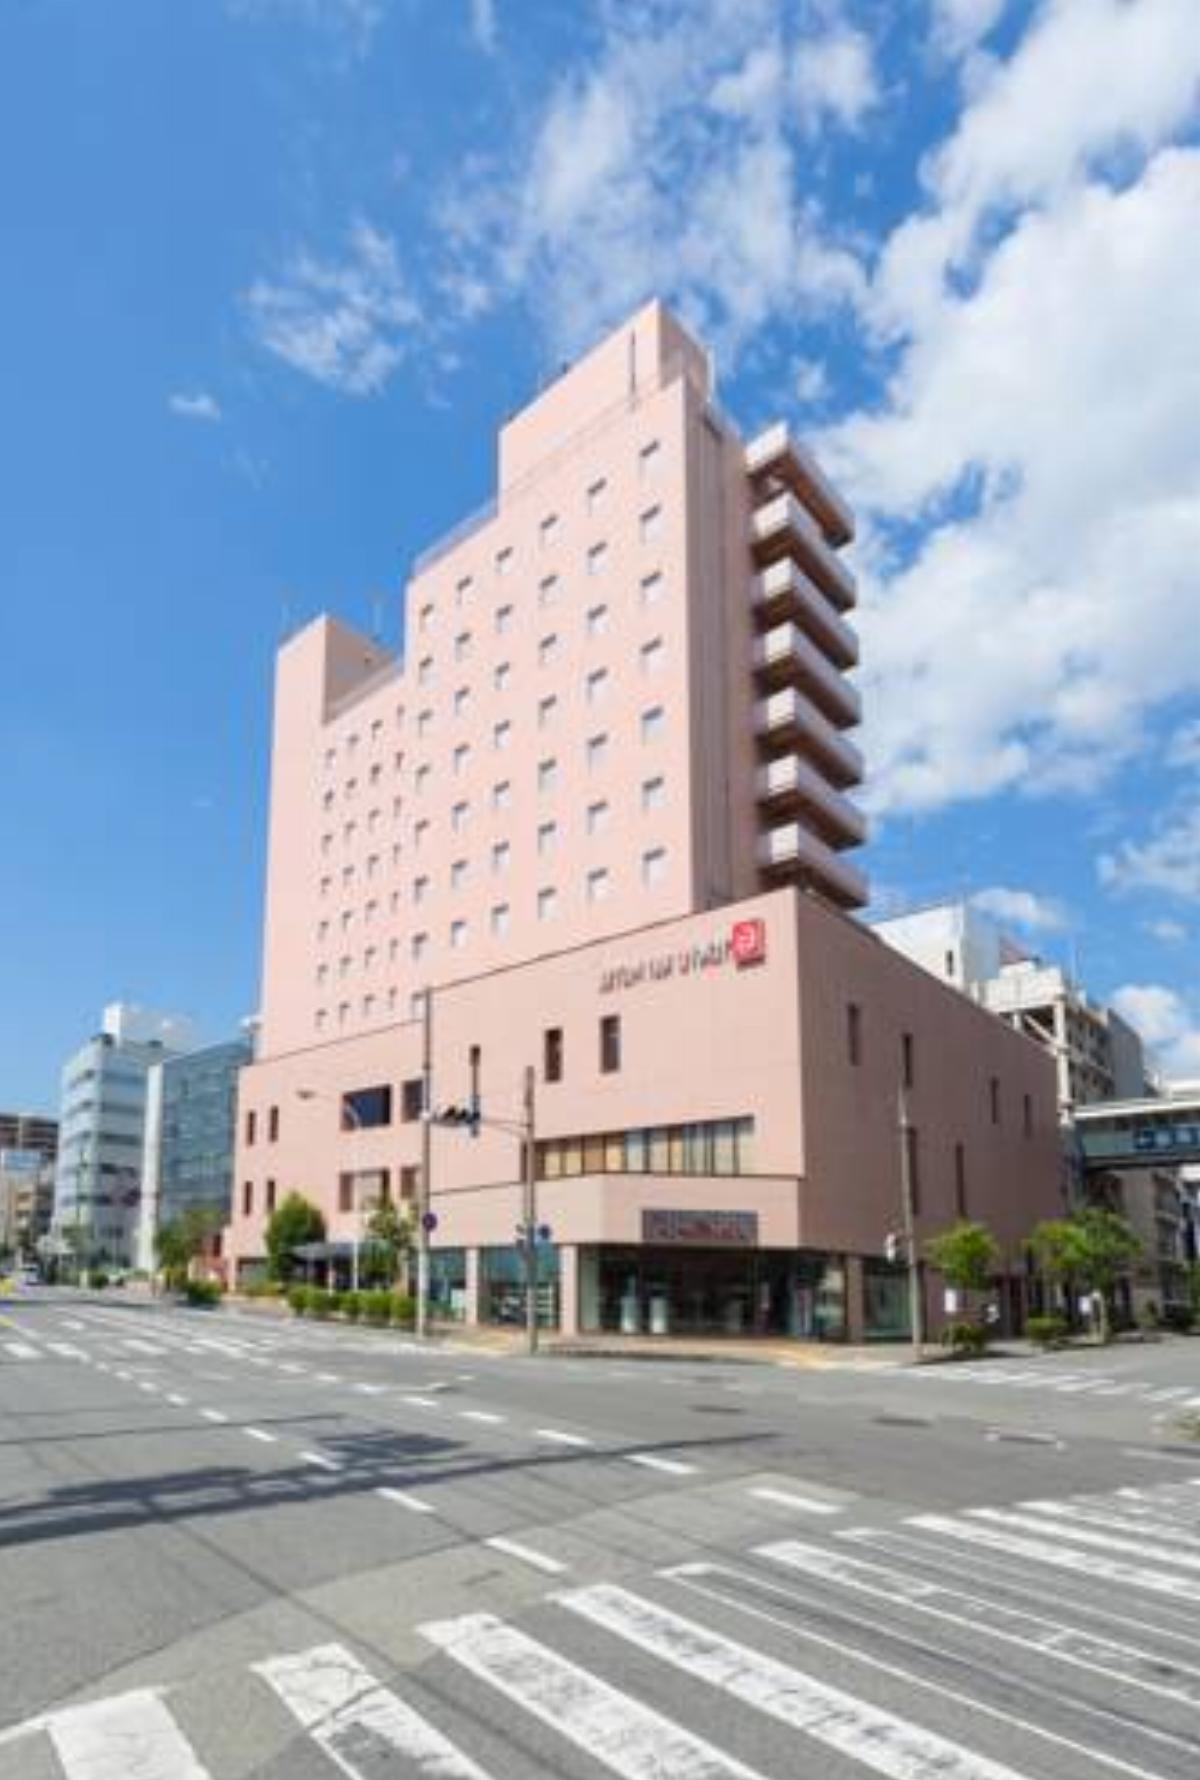 Matsumoto Tokyu REI Hotel Hotel Matsumoto Japan